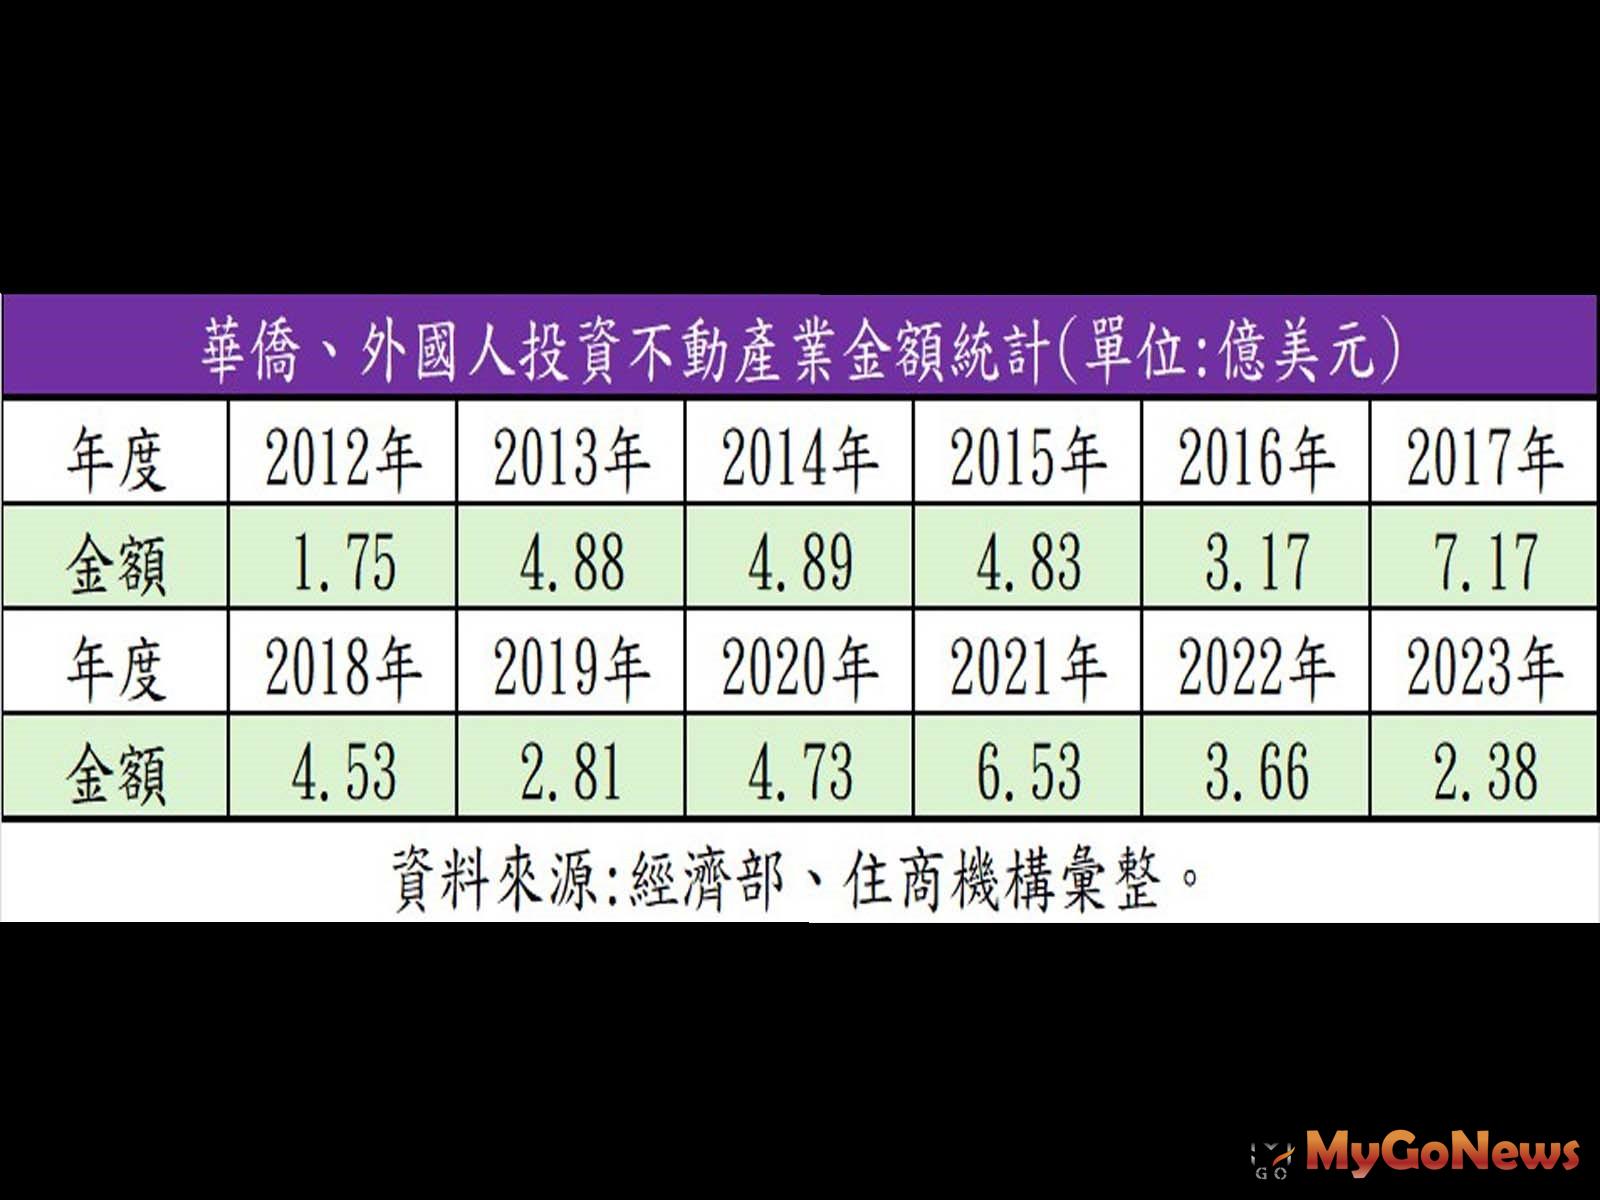 華僑、外國人投資不動產業金額統計。(表/住商機構提供) MyGoNews房地產新聞 市場快訊